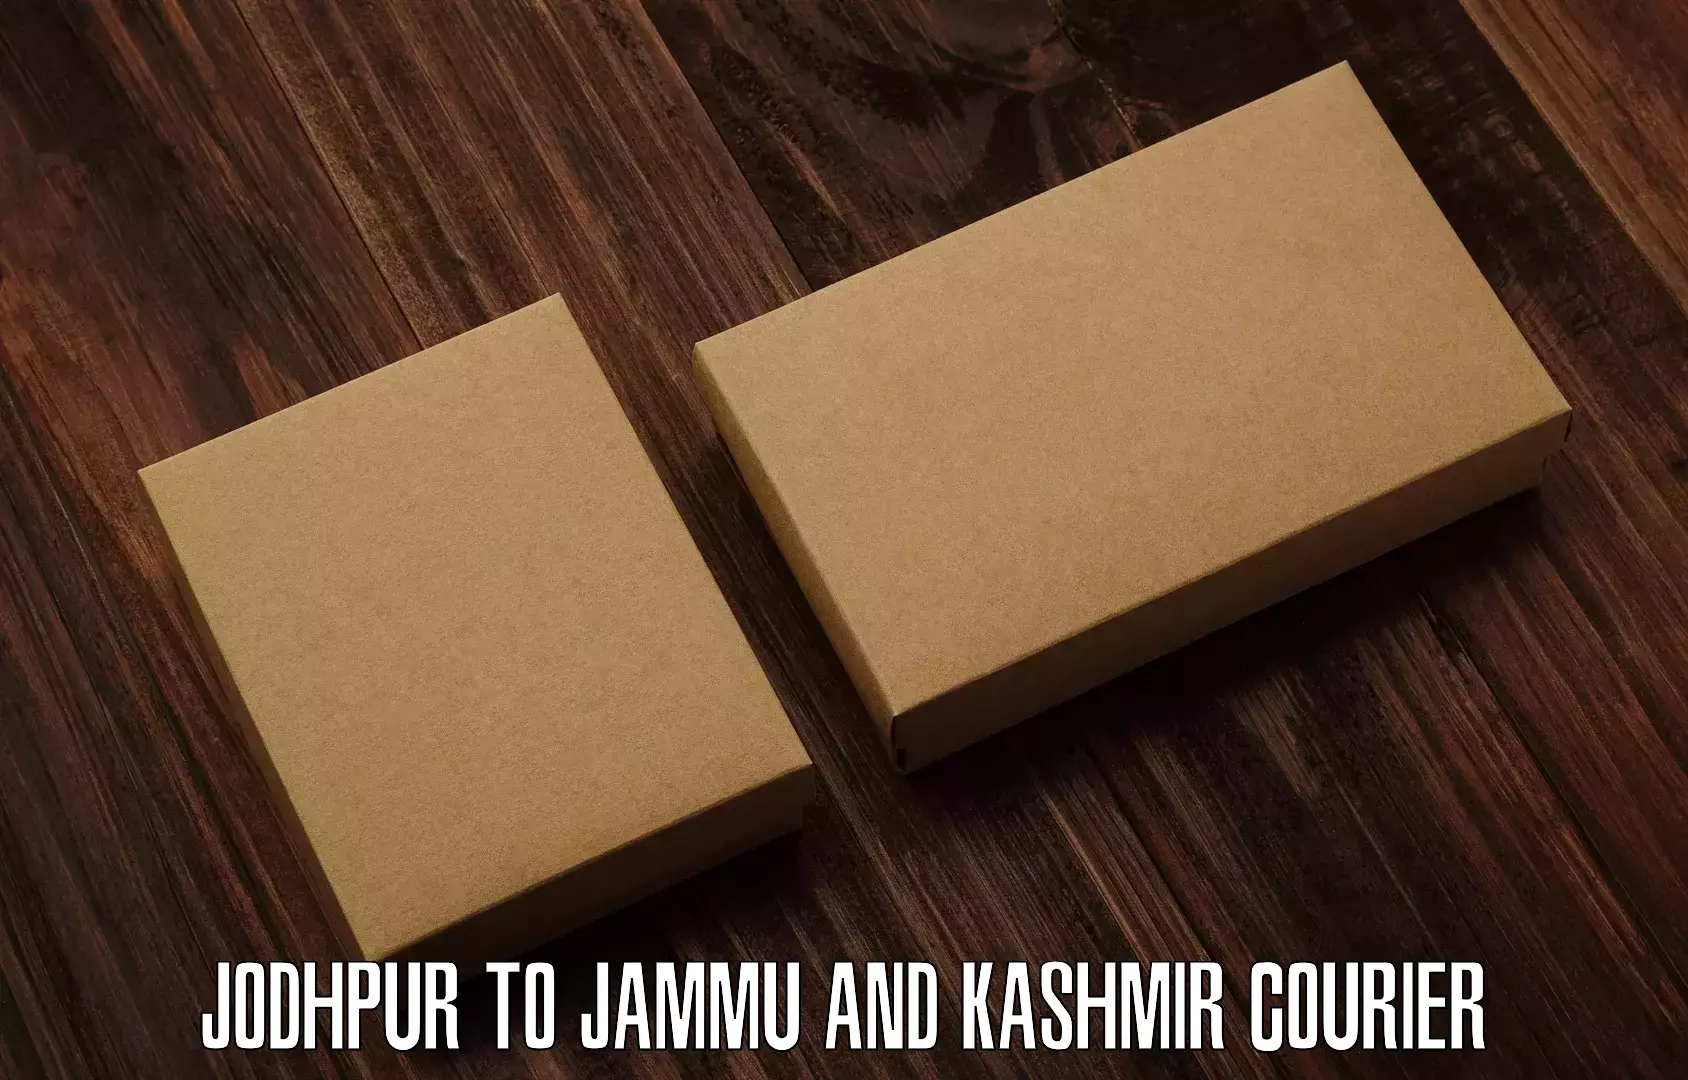 Cash on delivery service Jodhpur to University of Jammu